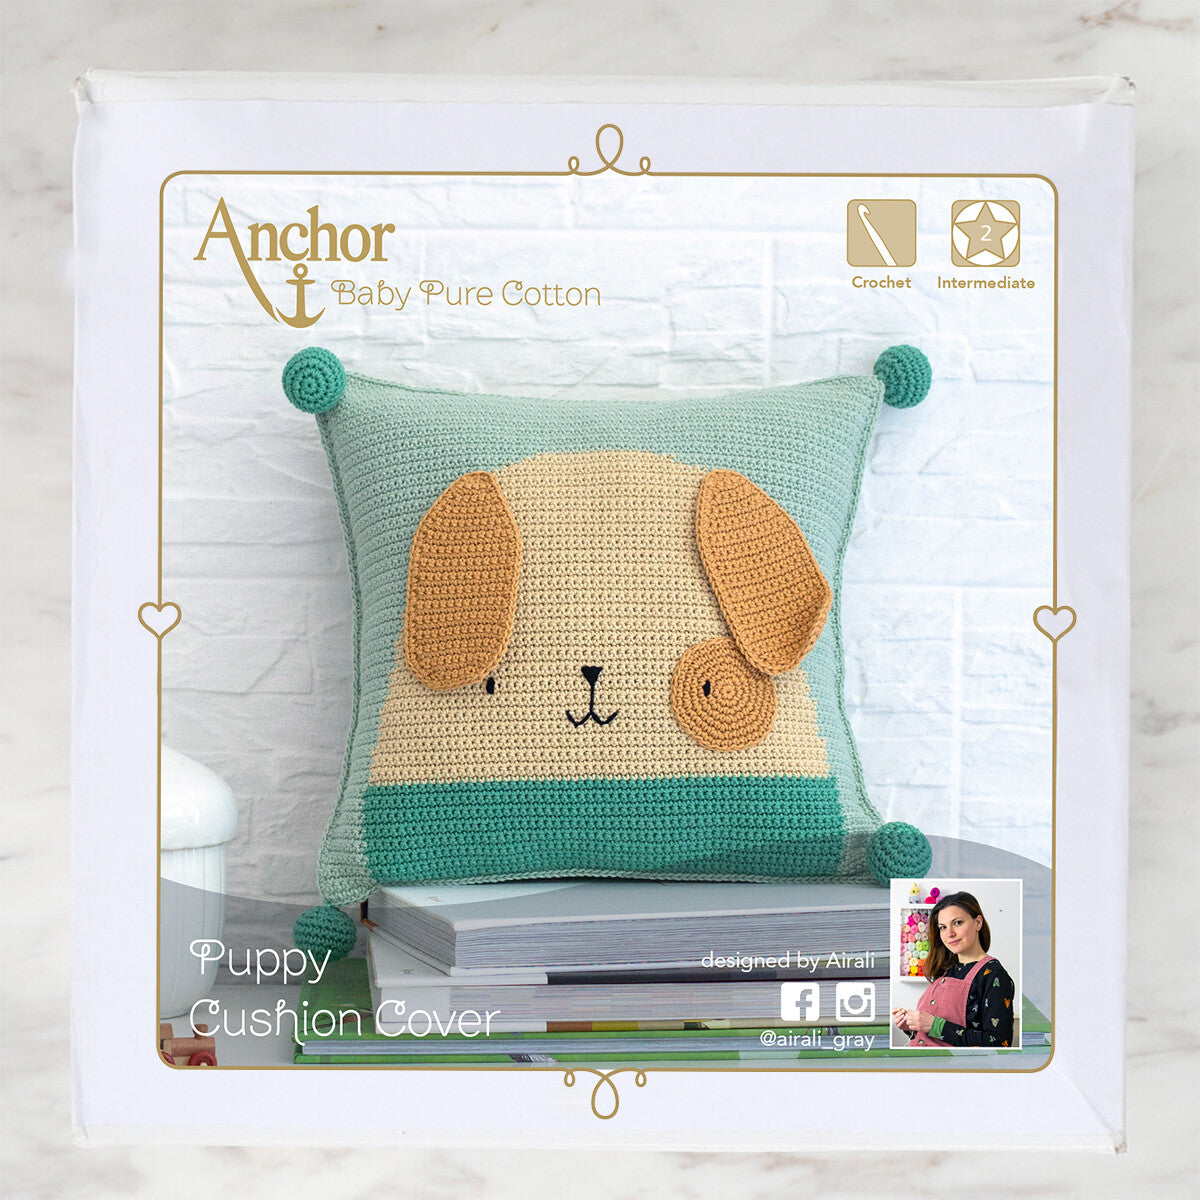 Anchor Puppy Cushion Cover Set - A28B003-09064